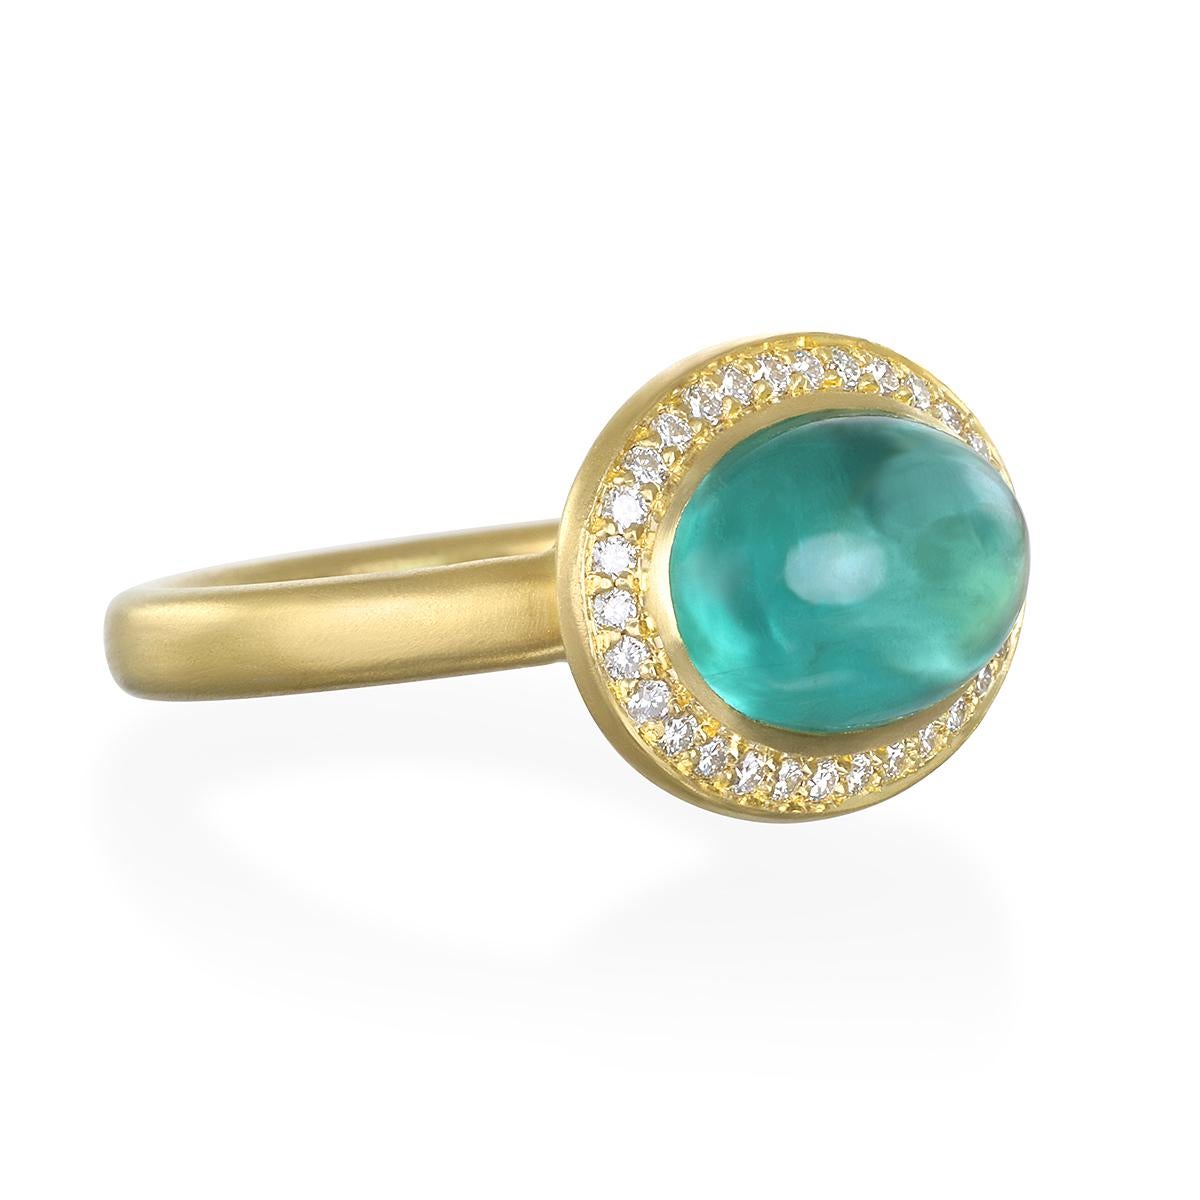 La spectaculaire bague en or 18 carats ornée d'un halo de diamants et de tourmaline bleu-vert de Faye Kim, avec sa finition mate, est évocatrice de styles à la fois moderne et vintage. La teinte bleu-vert luminescente de la tourmaline est complétée